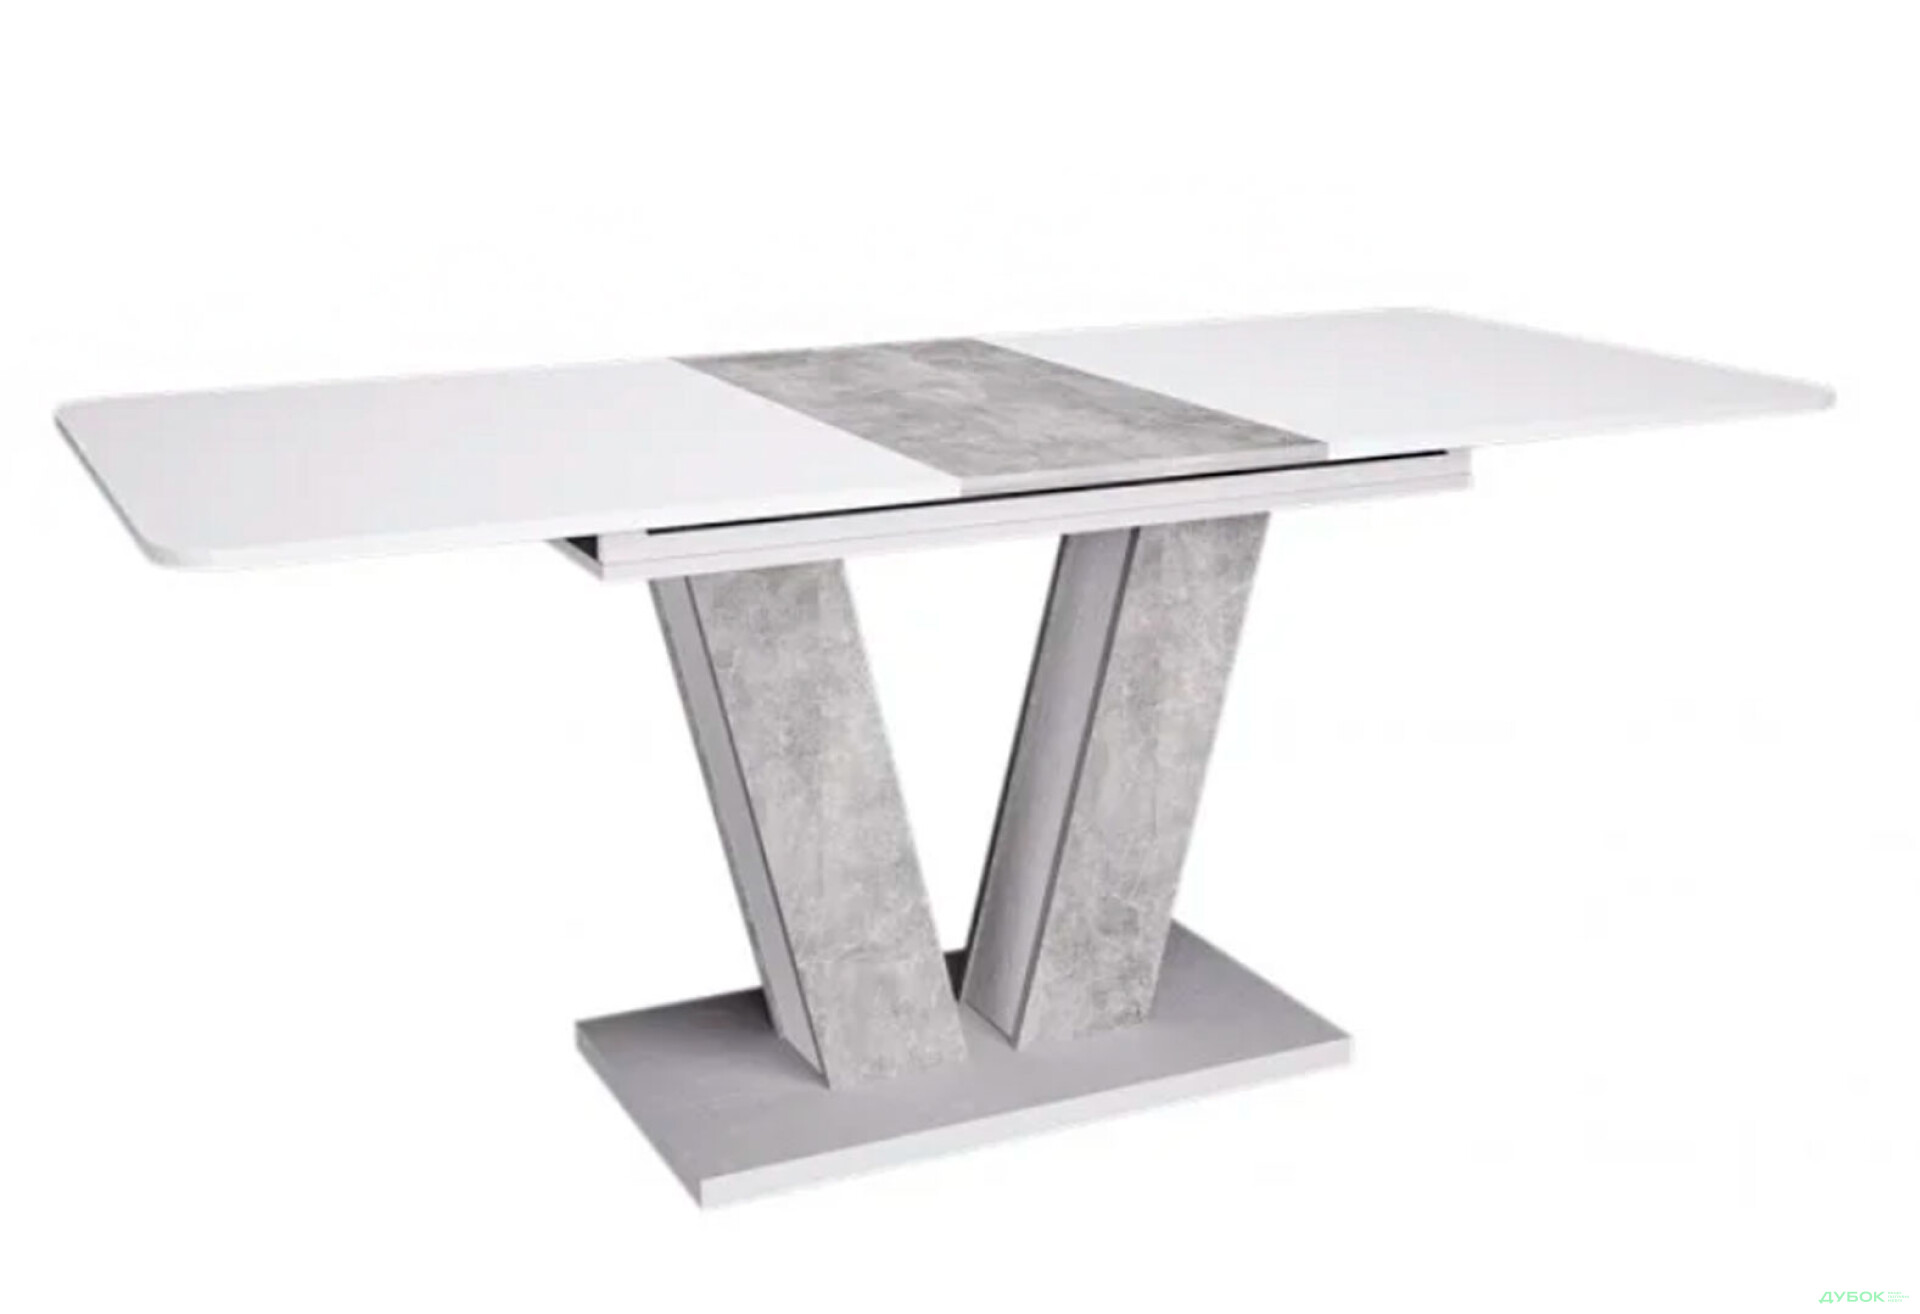 Фото 5 - Стол обеденный Intarsio Torino 140x80 см раскладной